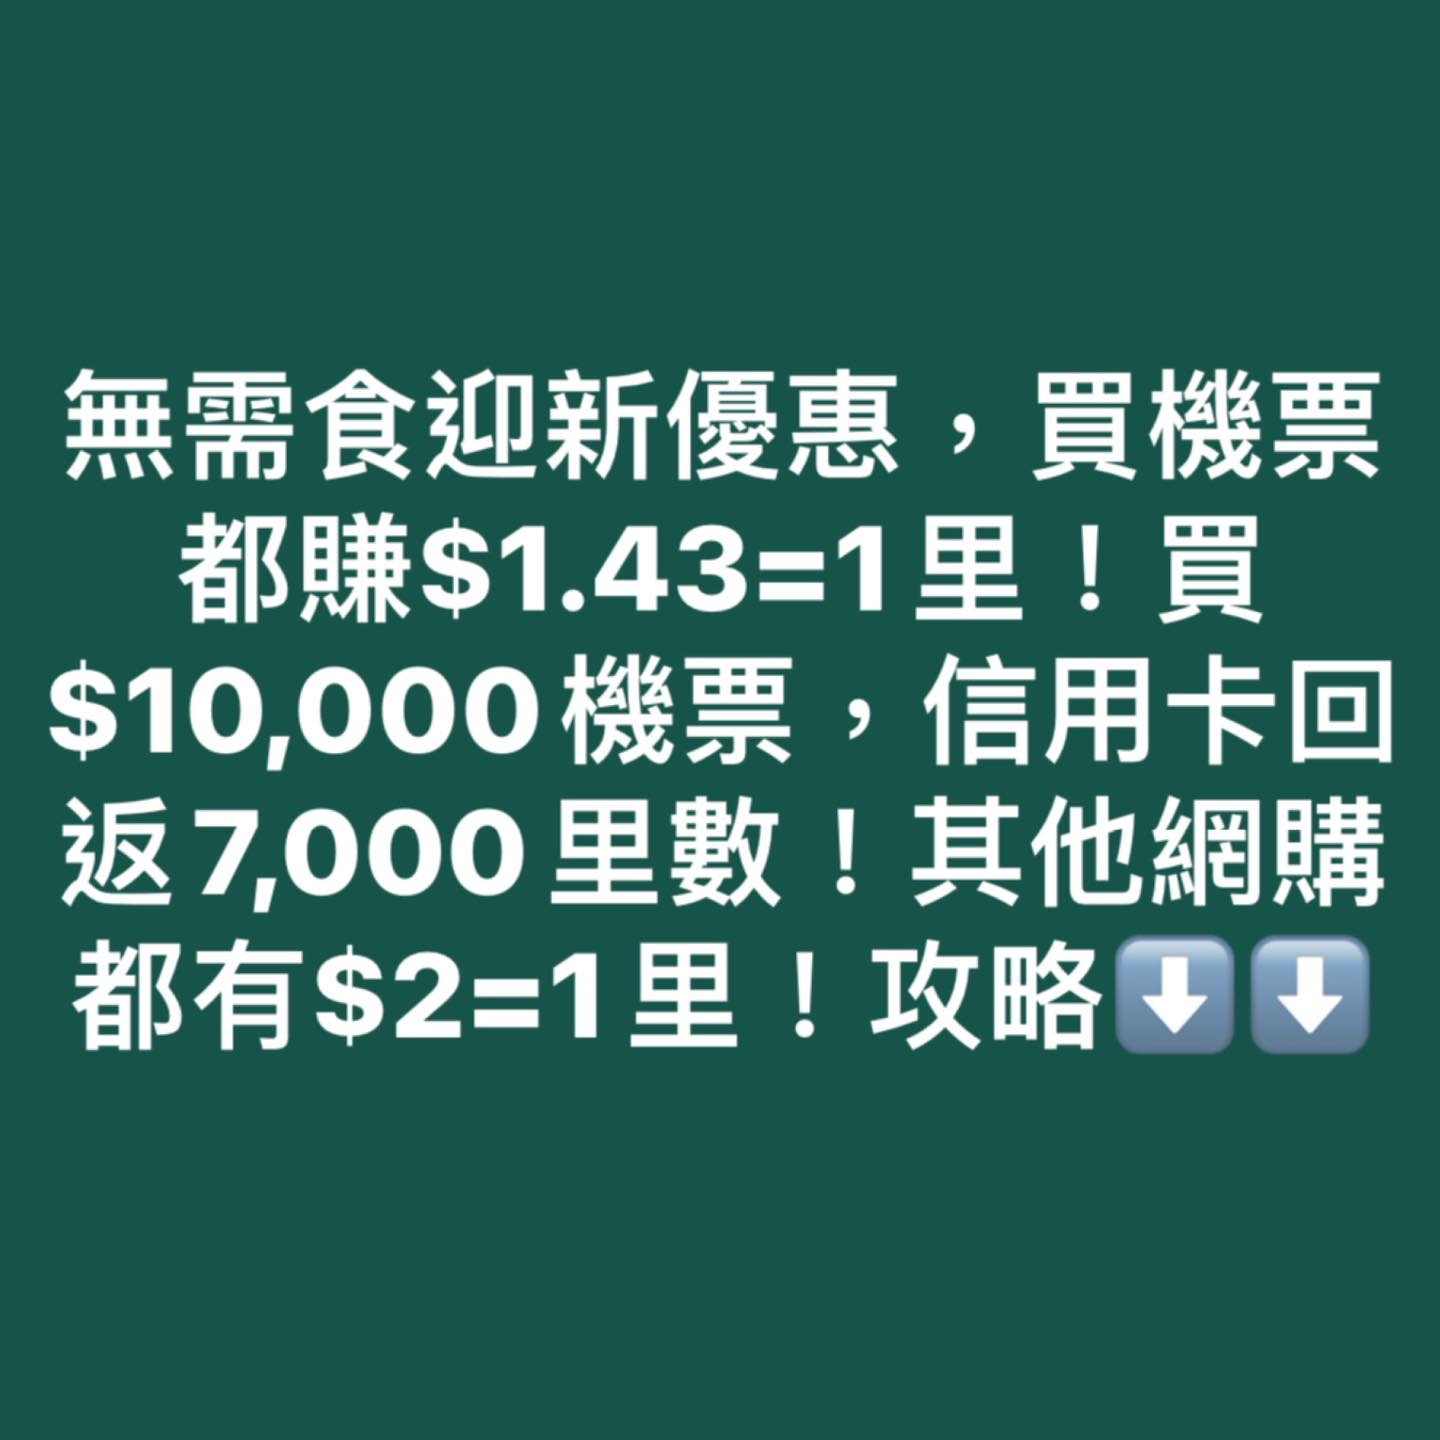 【渣打機票優惠】渣打國泰Masterard買國泰/HK Express機票低至$1.43=1里